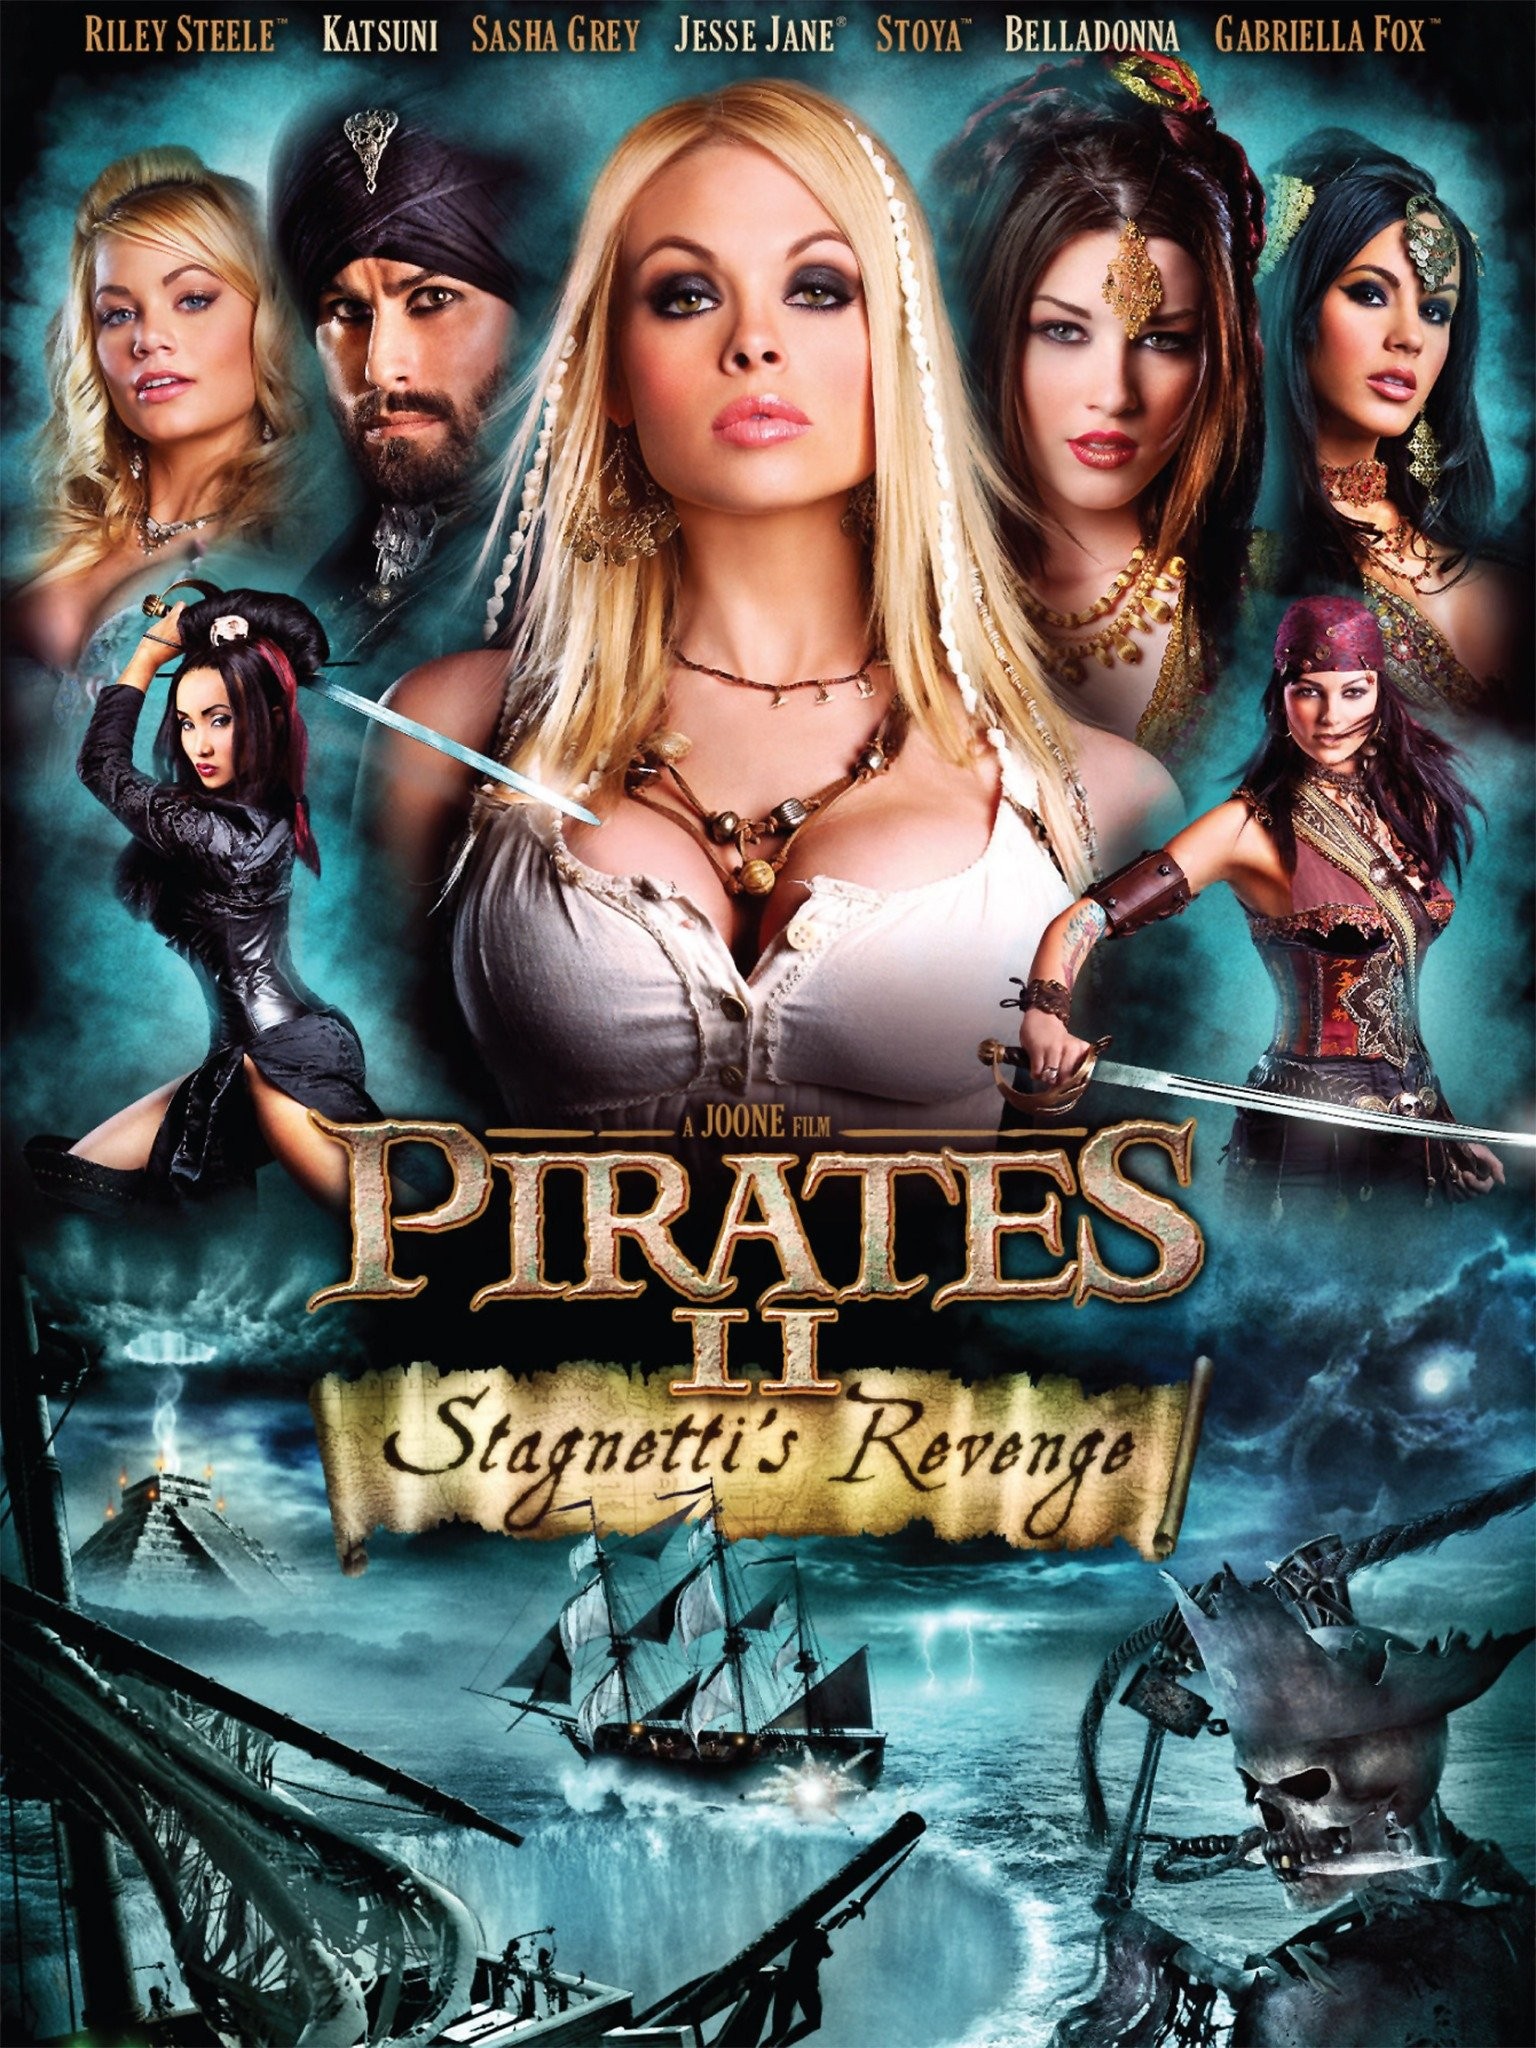 Pirates stagnetis revenge